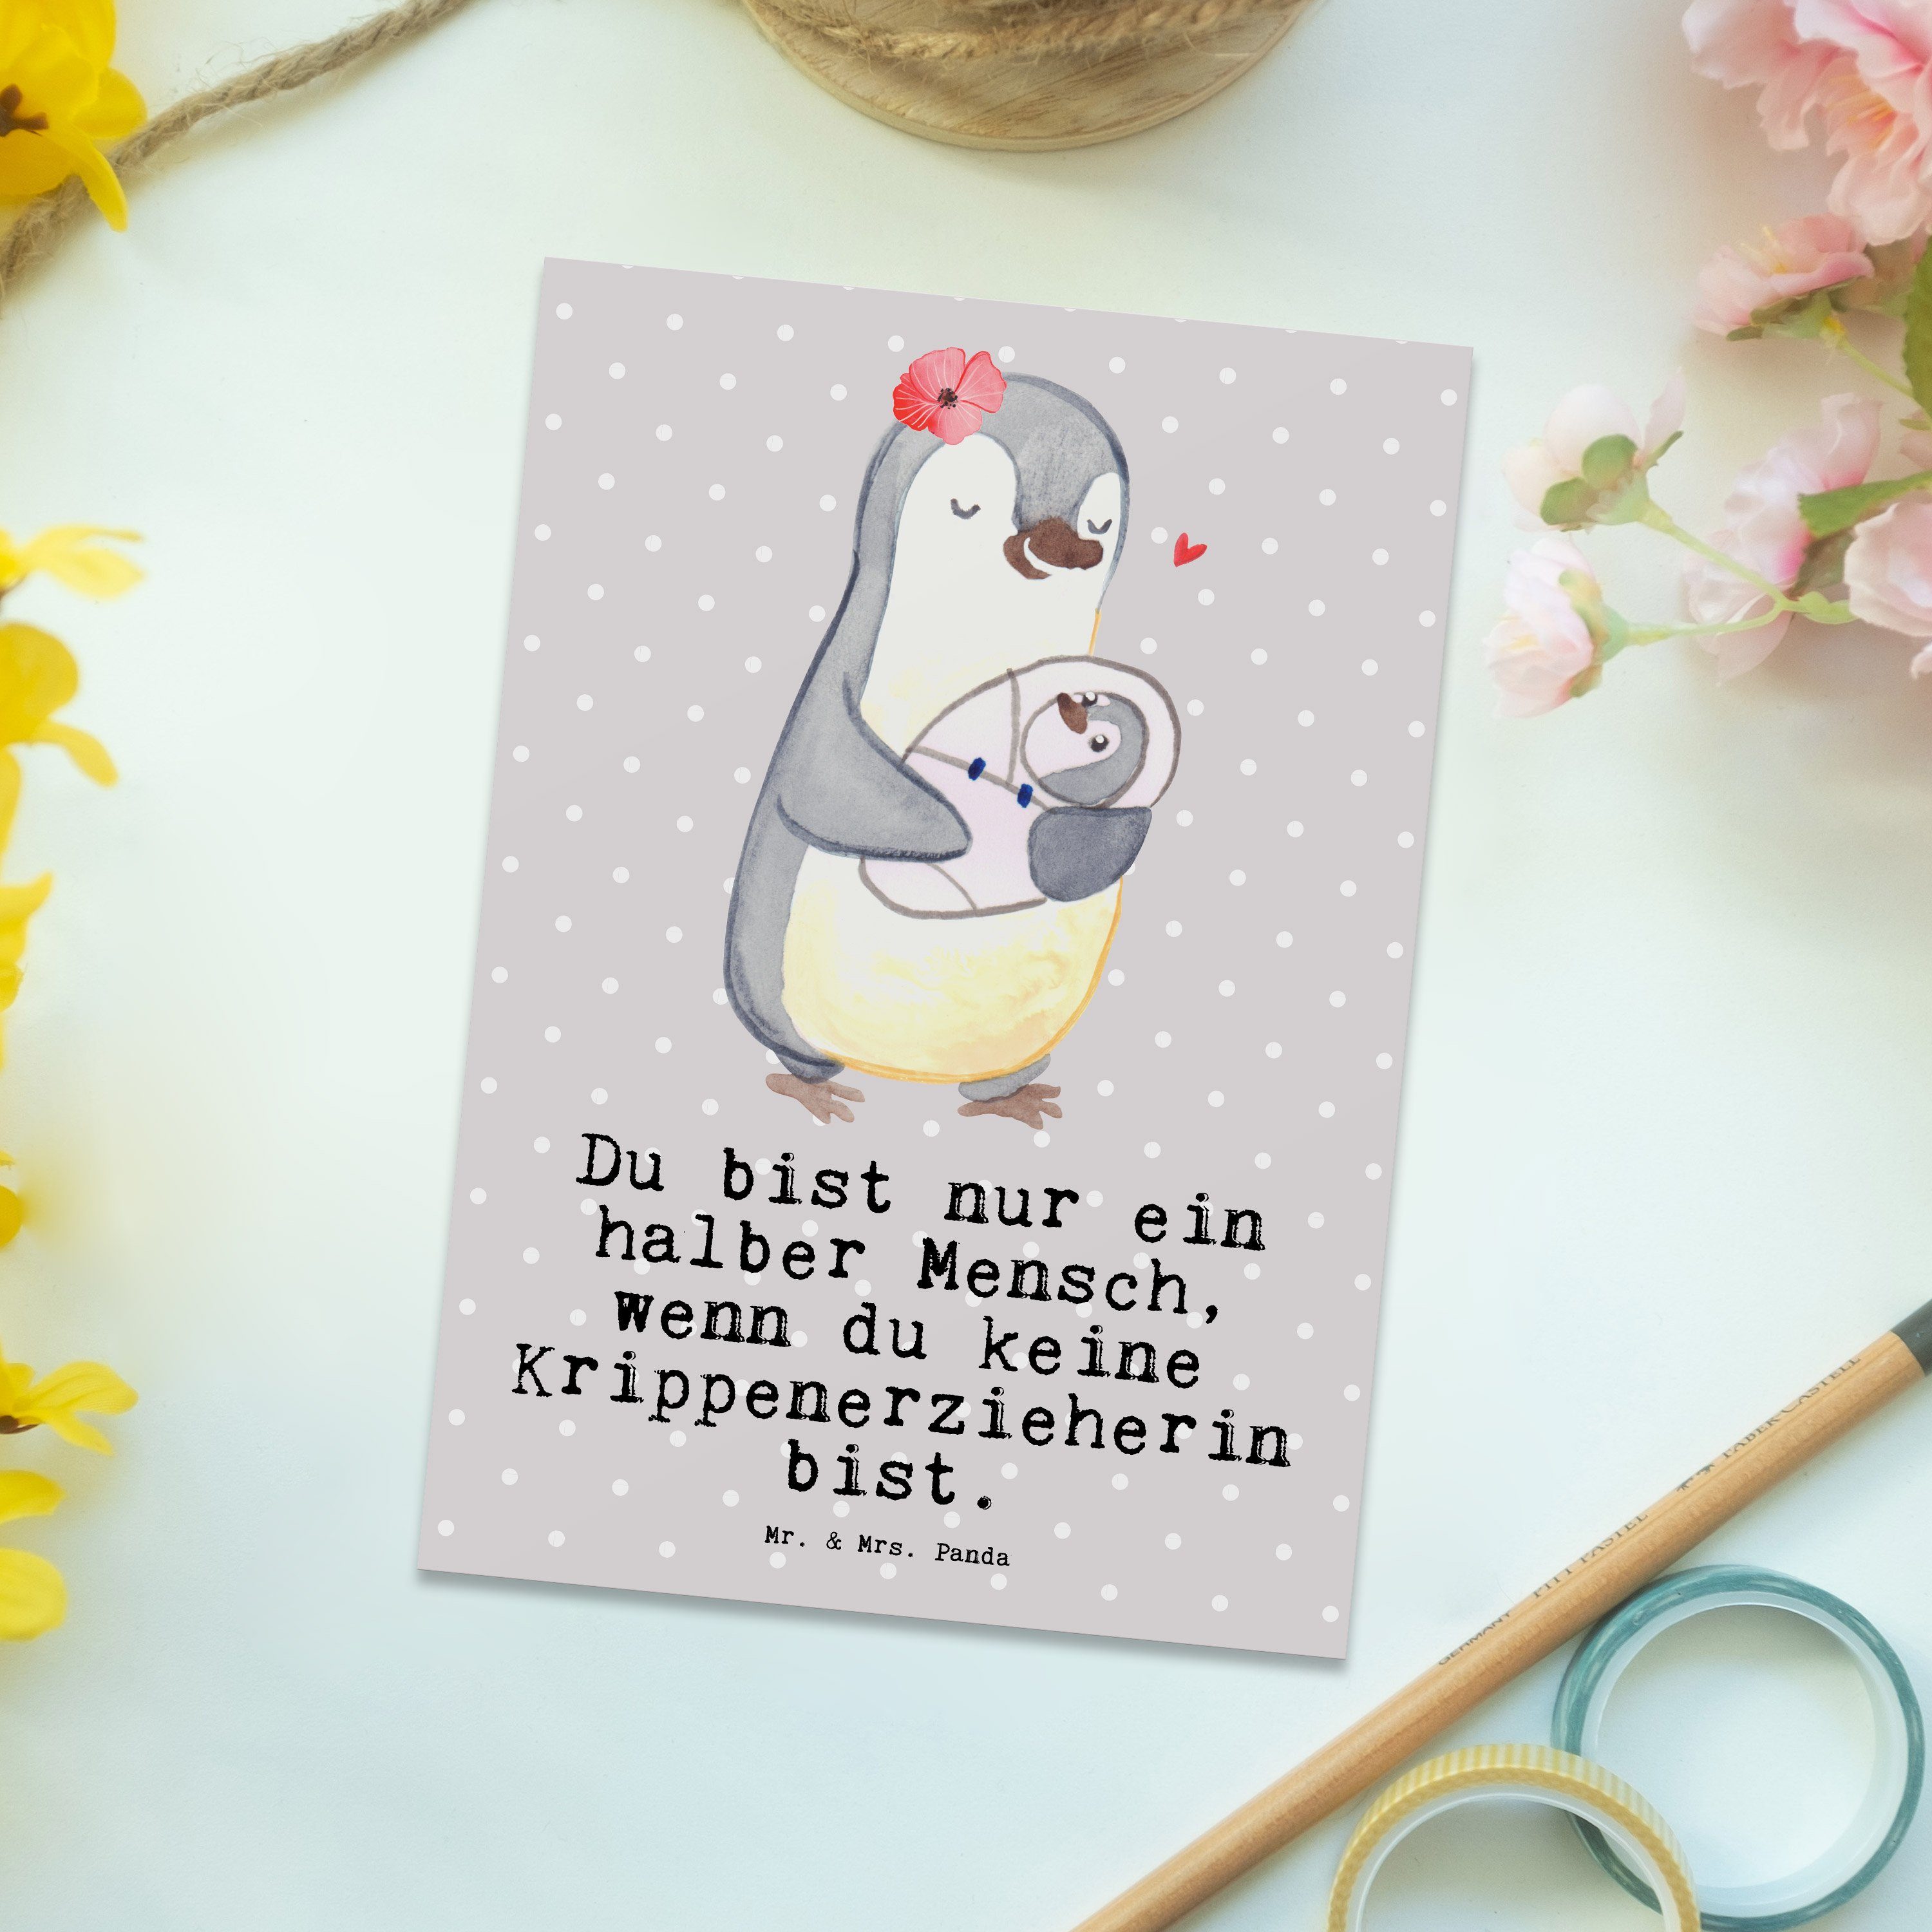 Grau - Panda Mrs. - Krippenerzieherin mit Einl Geschenk, Herz Pädagogin, Mr. Pastell & Postkarte